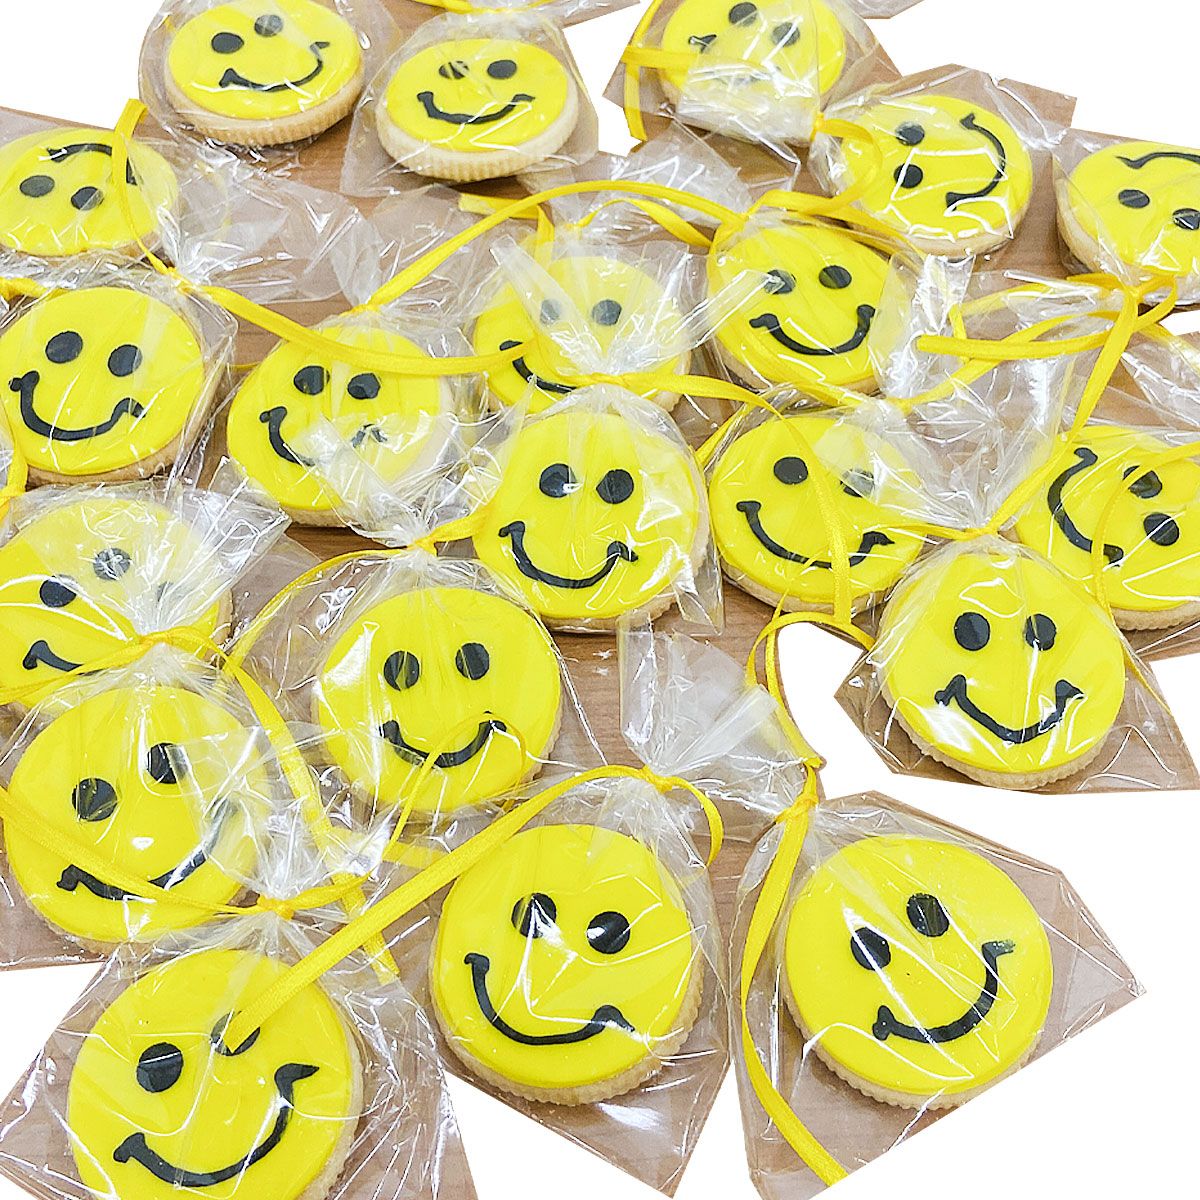 galletas carita feliz